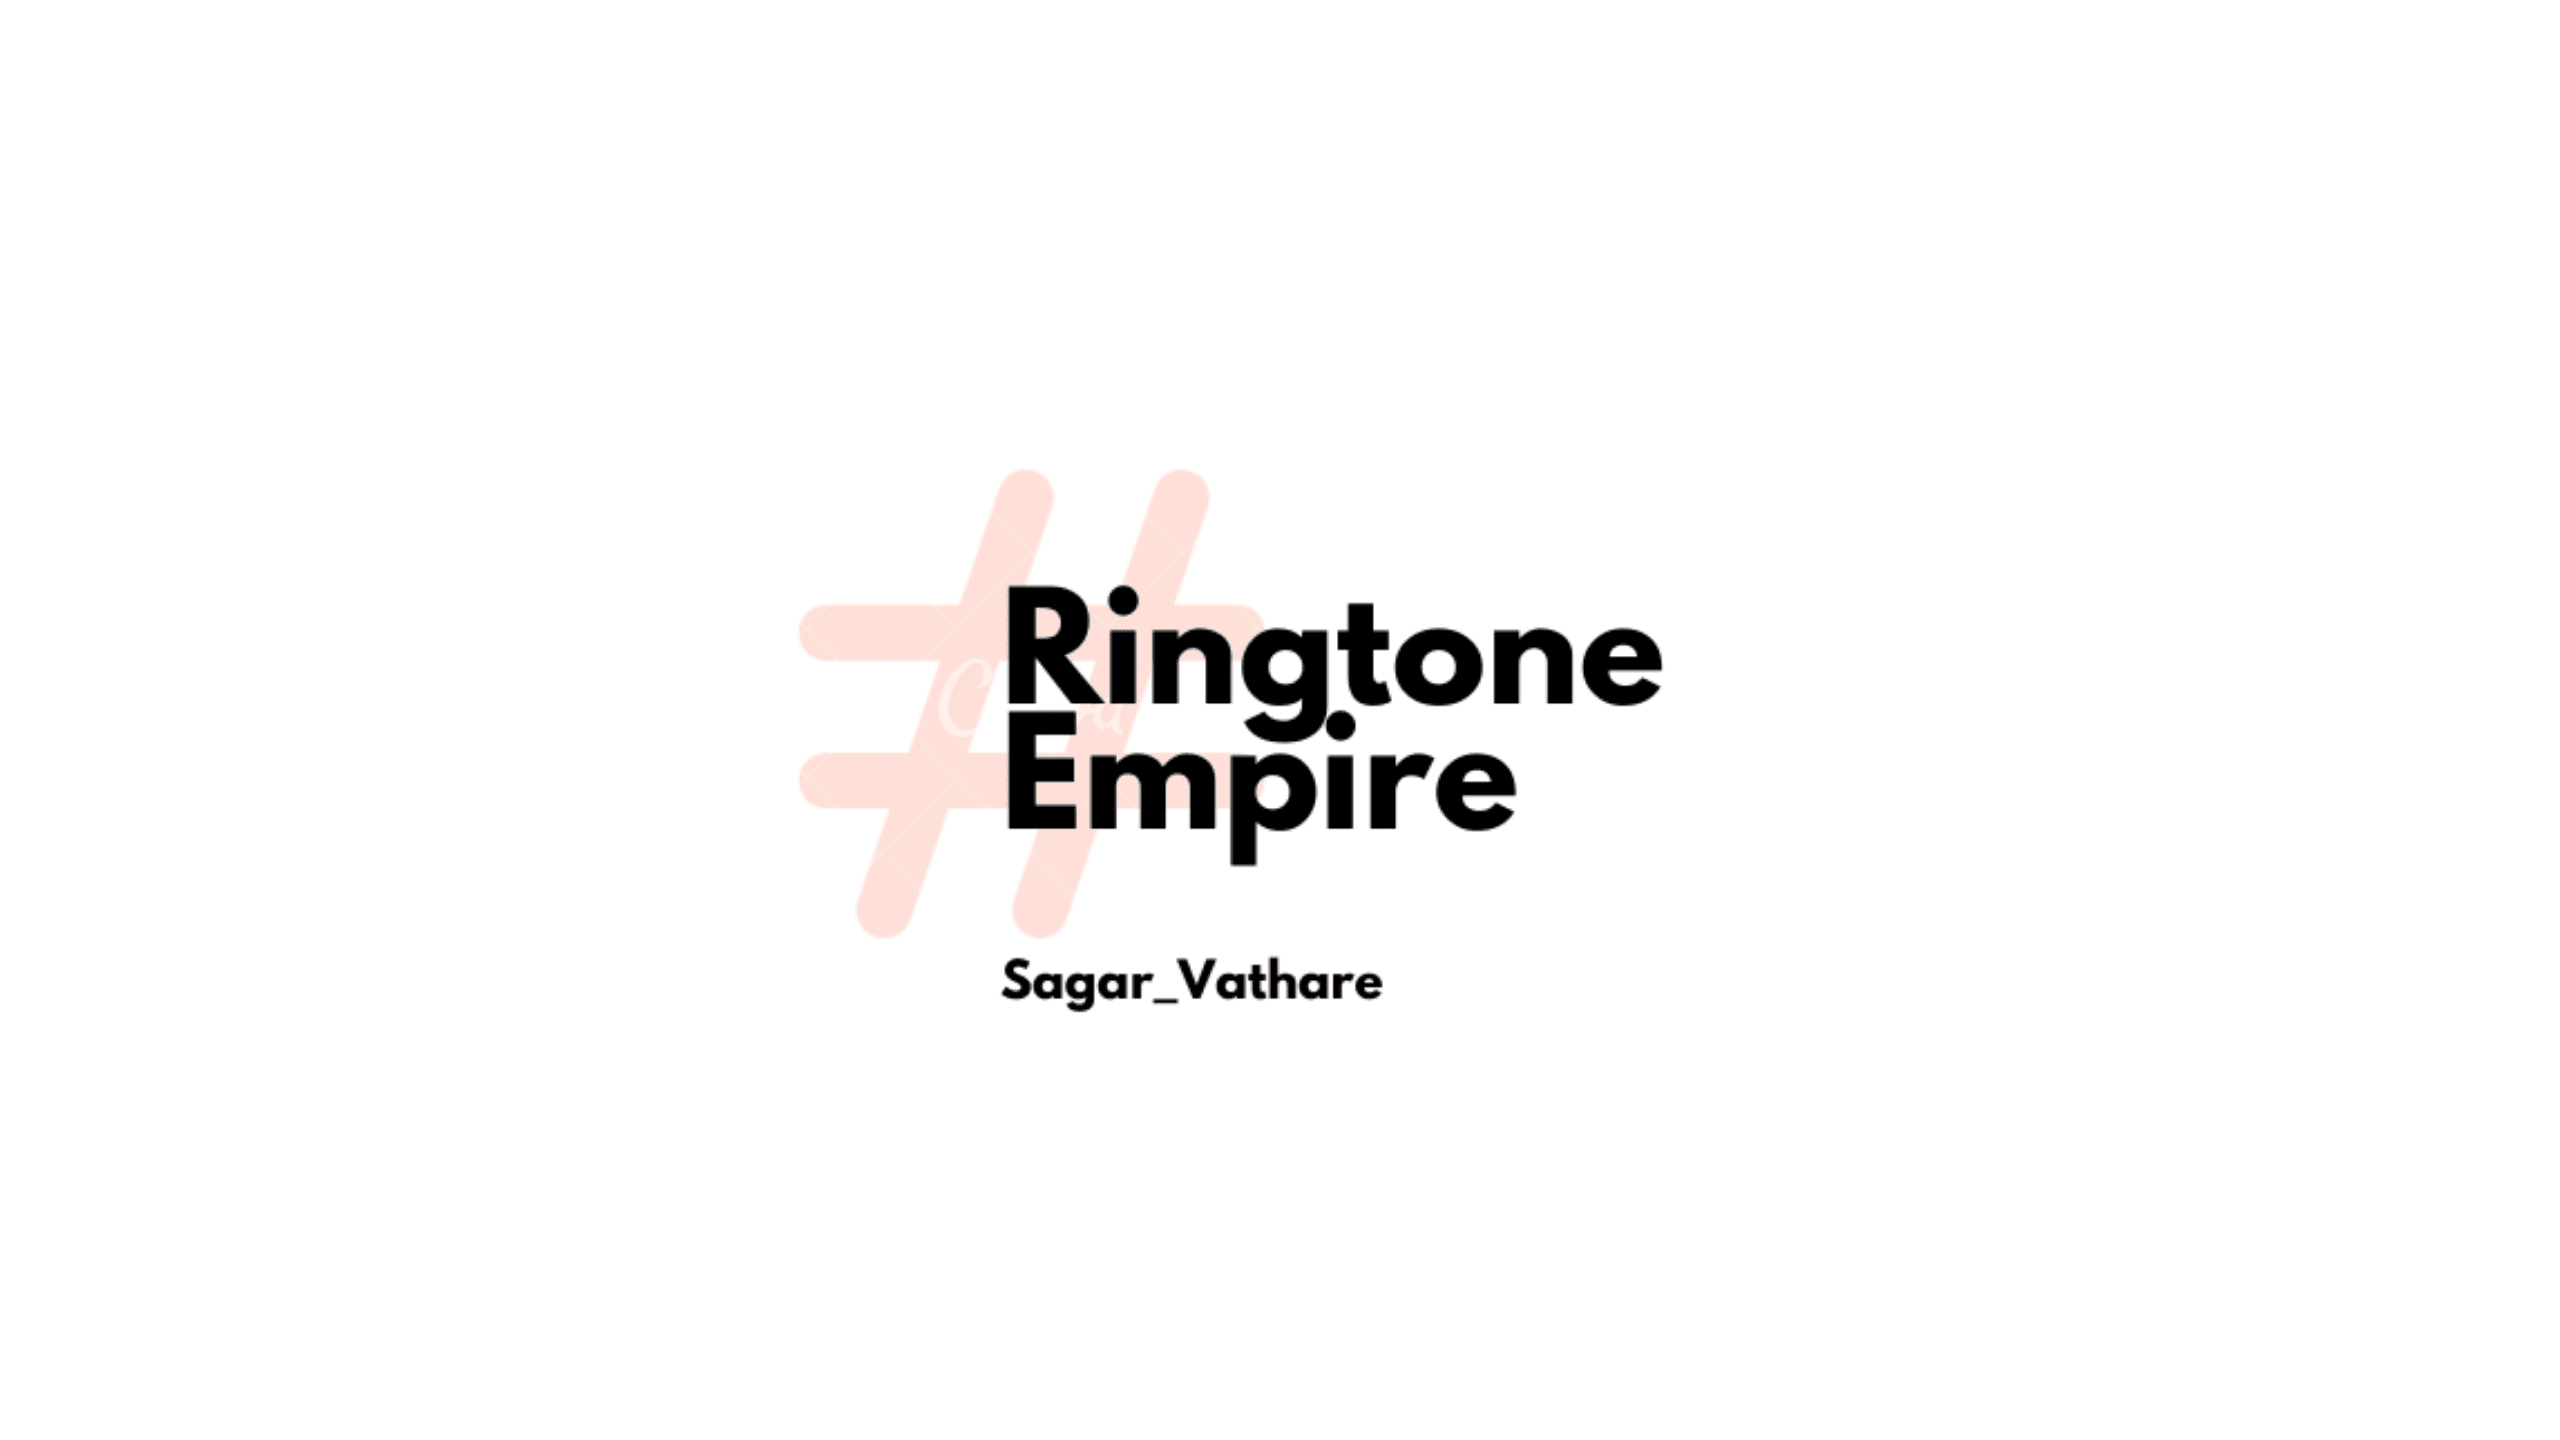 Ringtone Empire